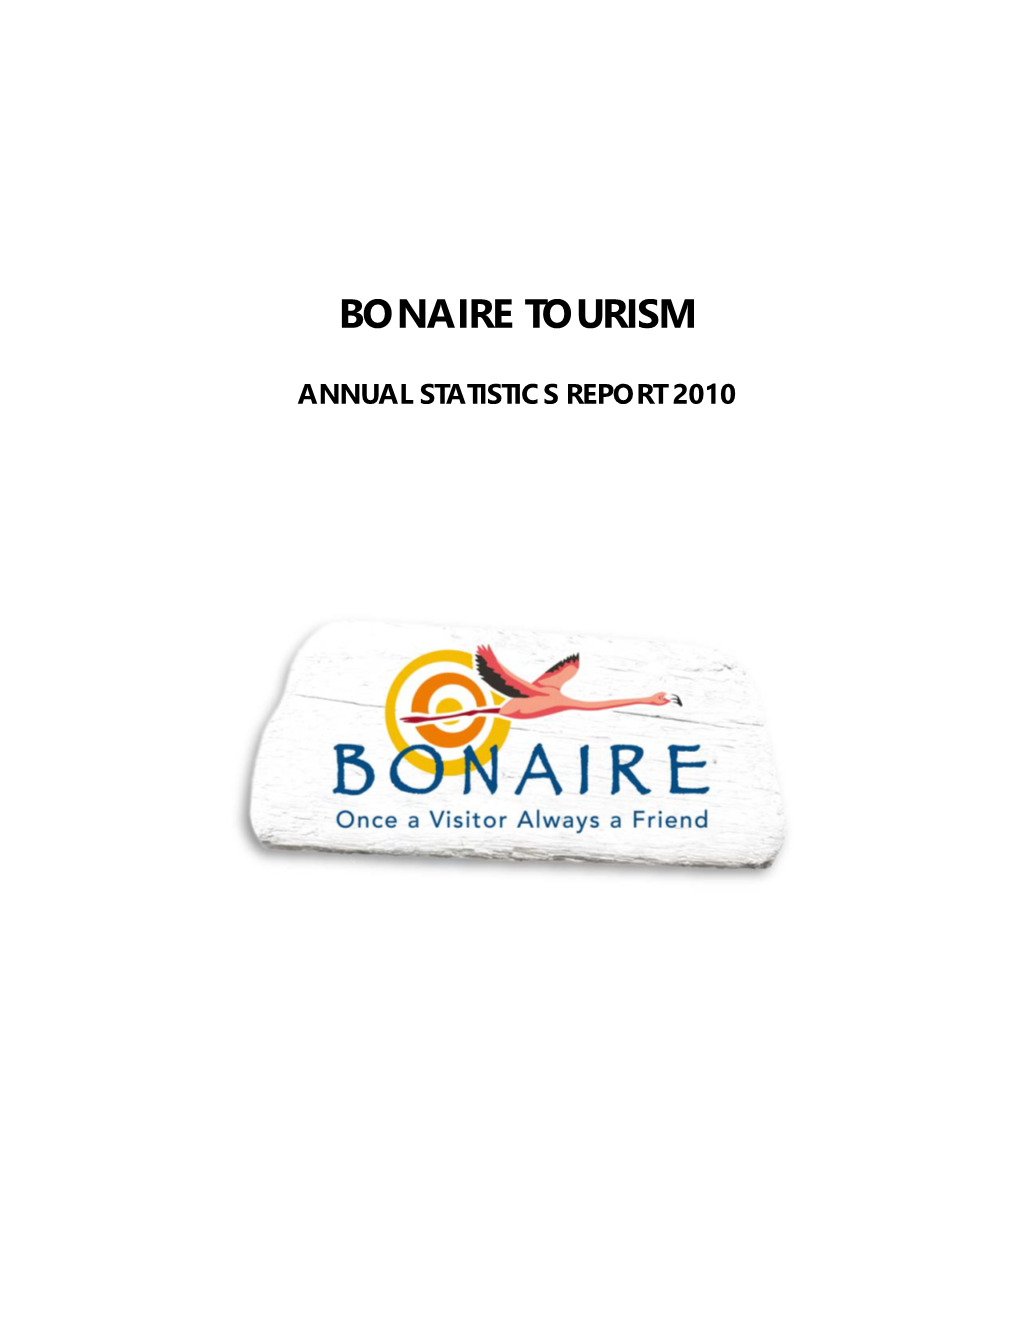 Bonaire Tourism